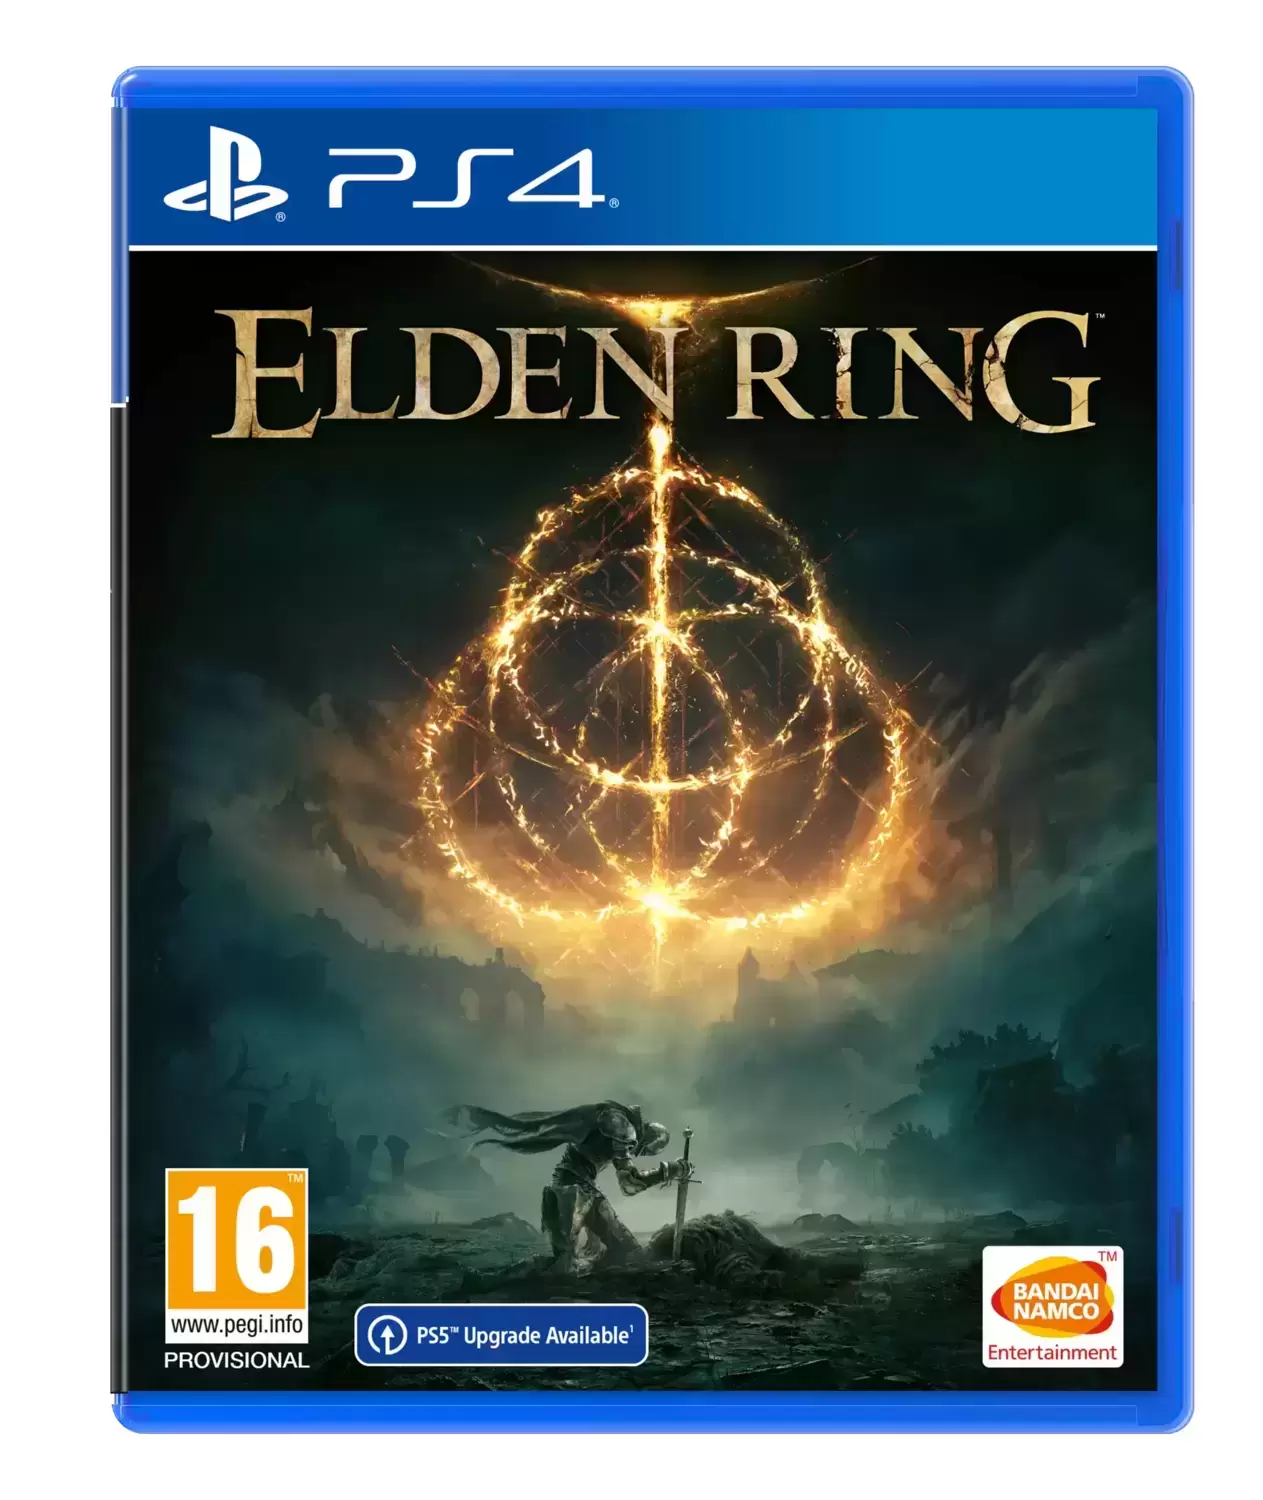 PS4 Games - Elden Ring